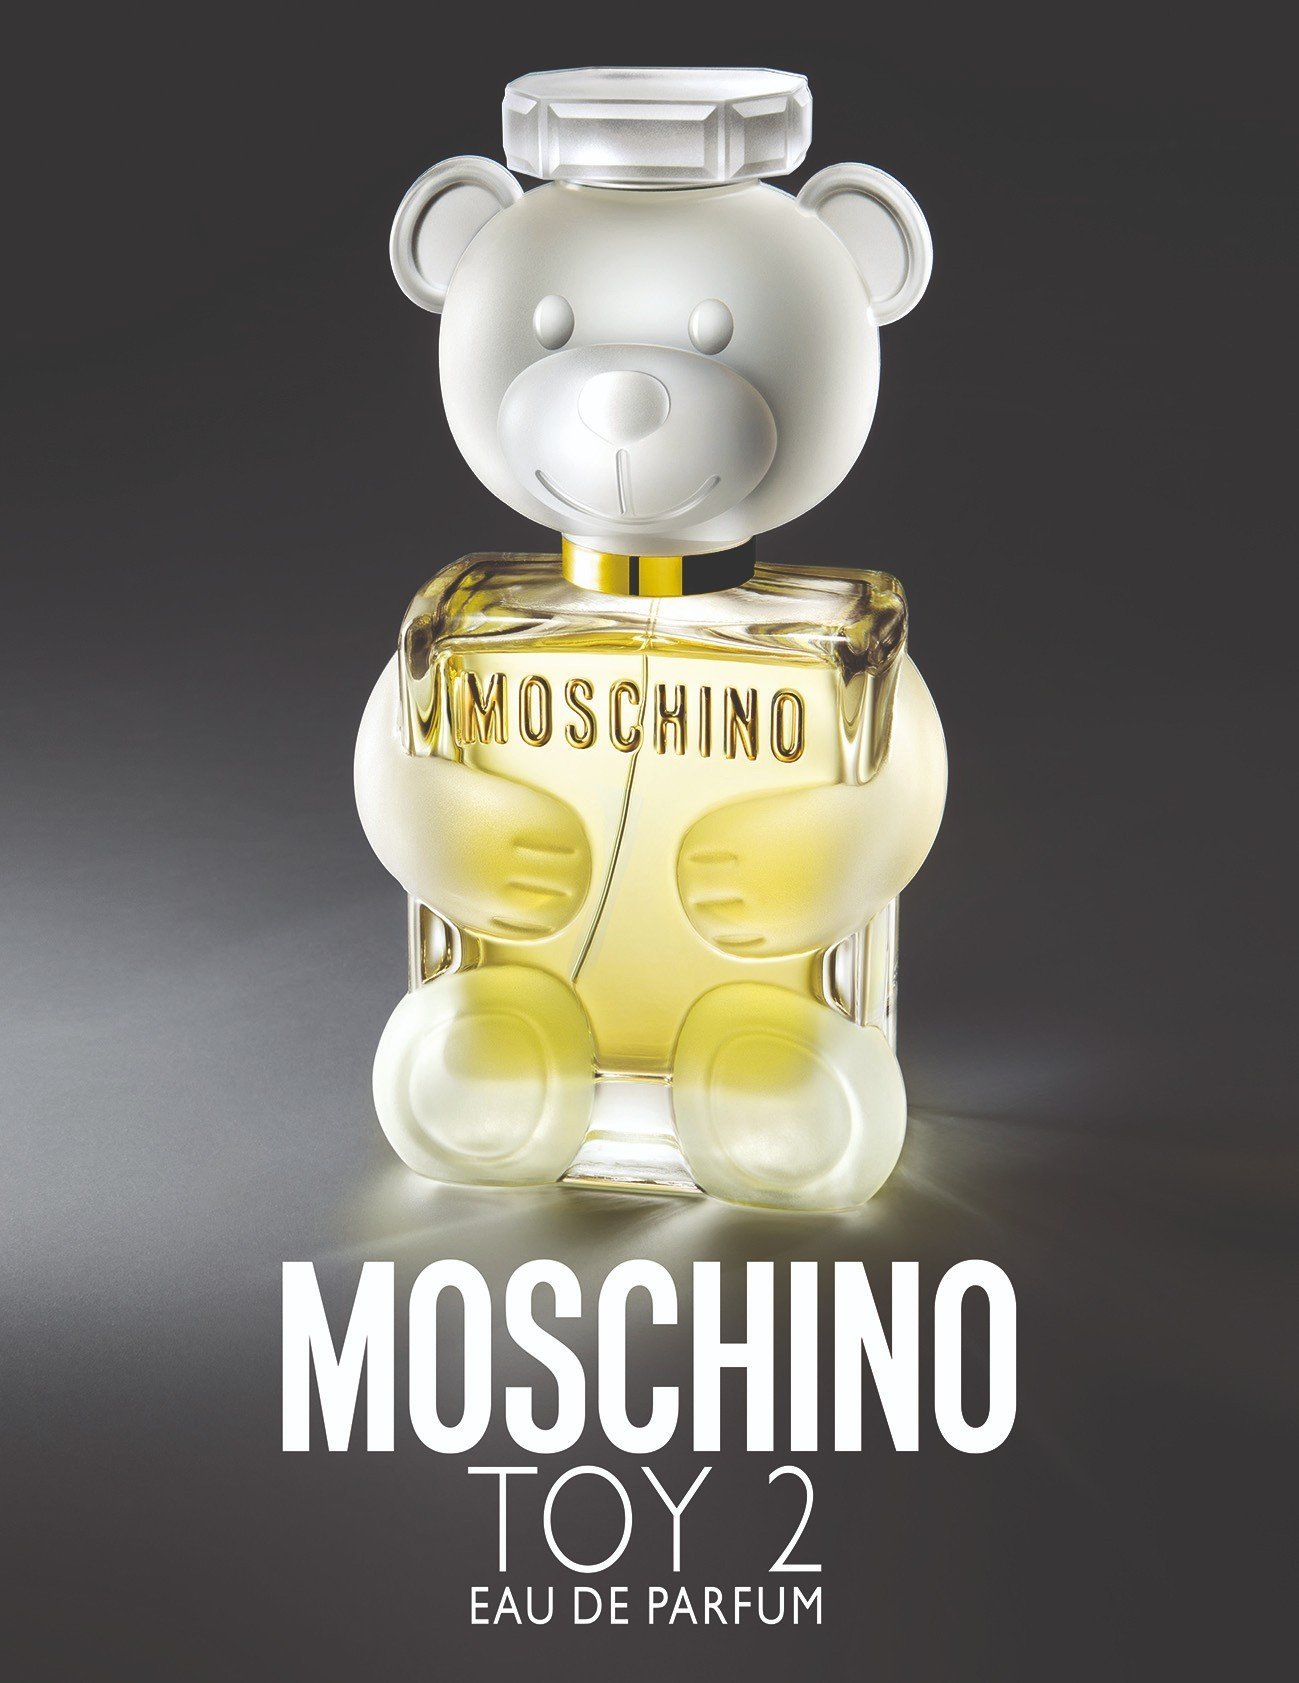 Mua Áo Phông Moschino Black Mirror Teddy Bear V0710 5441 7555 Màu Đen Size  XS - Moschino - Mua tại Vua Hàng Hiệu h059389